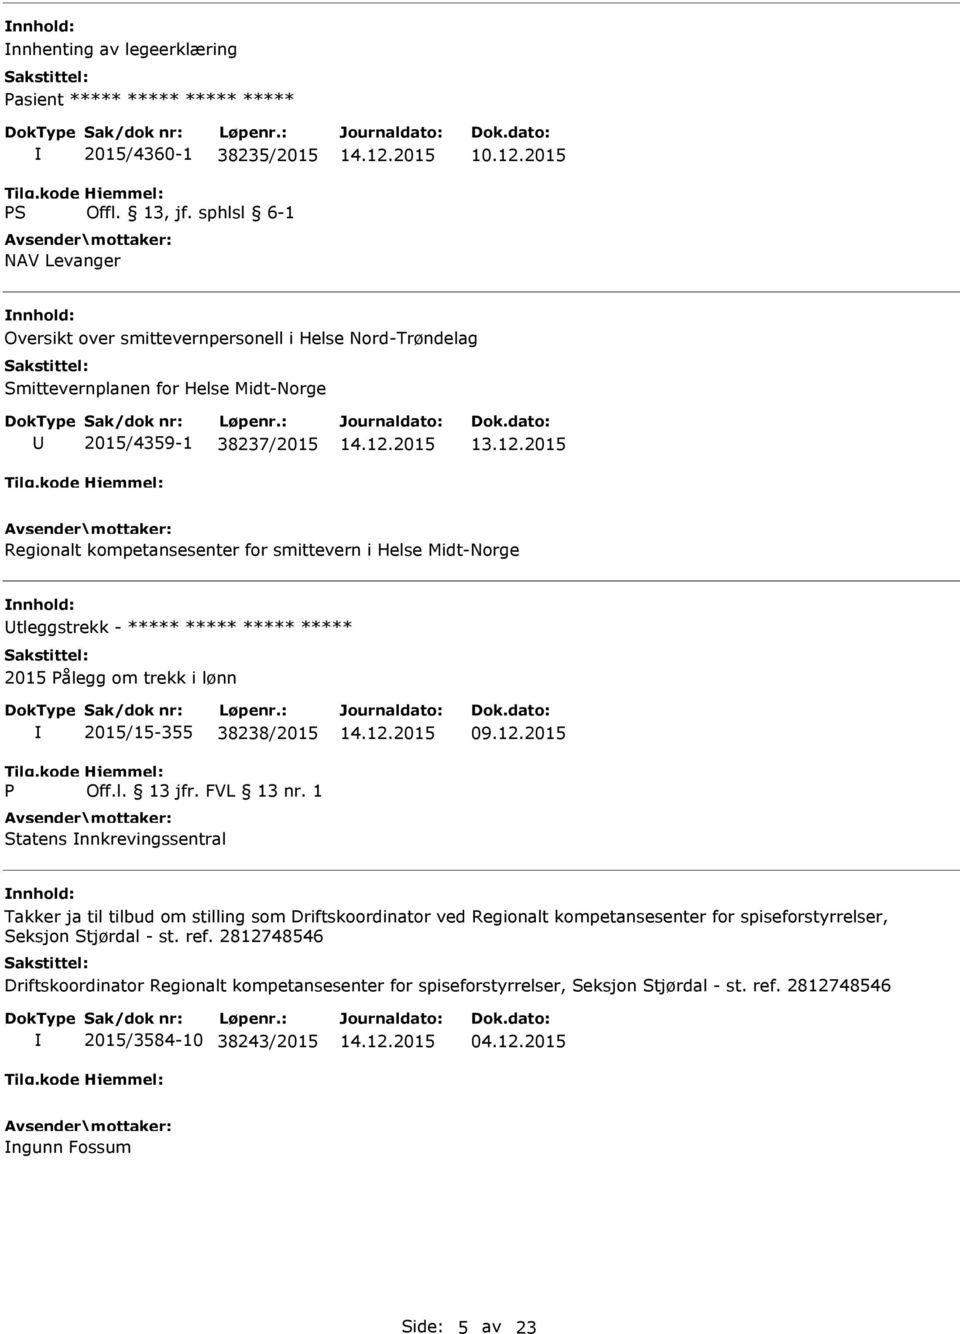 2015 Regionalt kompetansesenter for smittevern i Helse Midt-Norge tleggstrekk - ***** ***** ***** ***** 2015 ålegg om trekk i lønn 2015/15-355 38238/2015 Off.l. 13 jfr. FVL 13 nr.